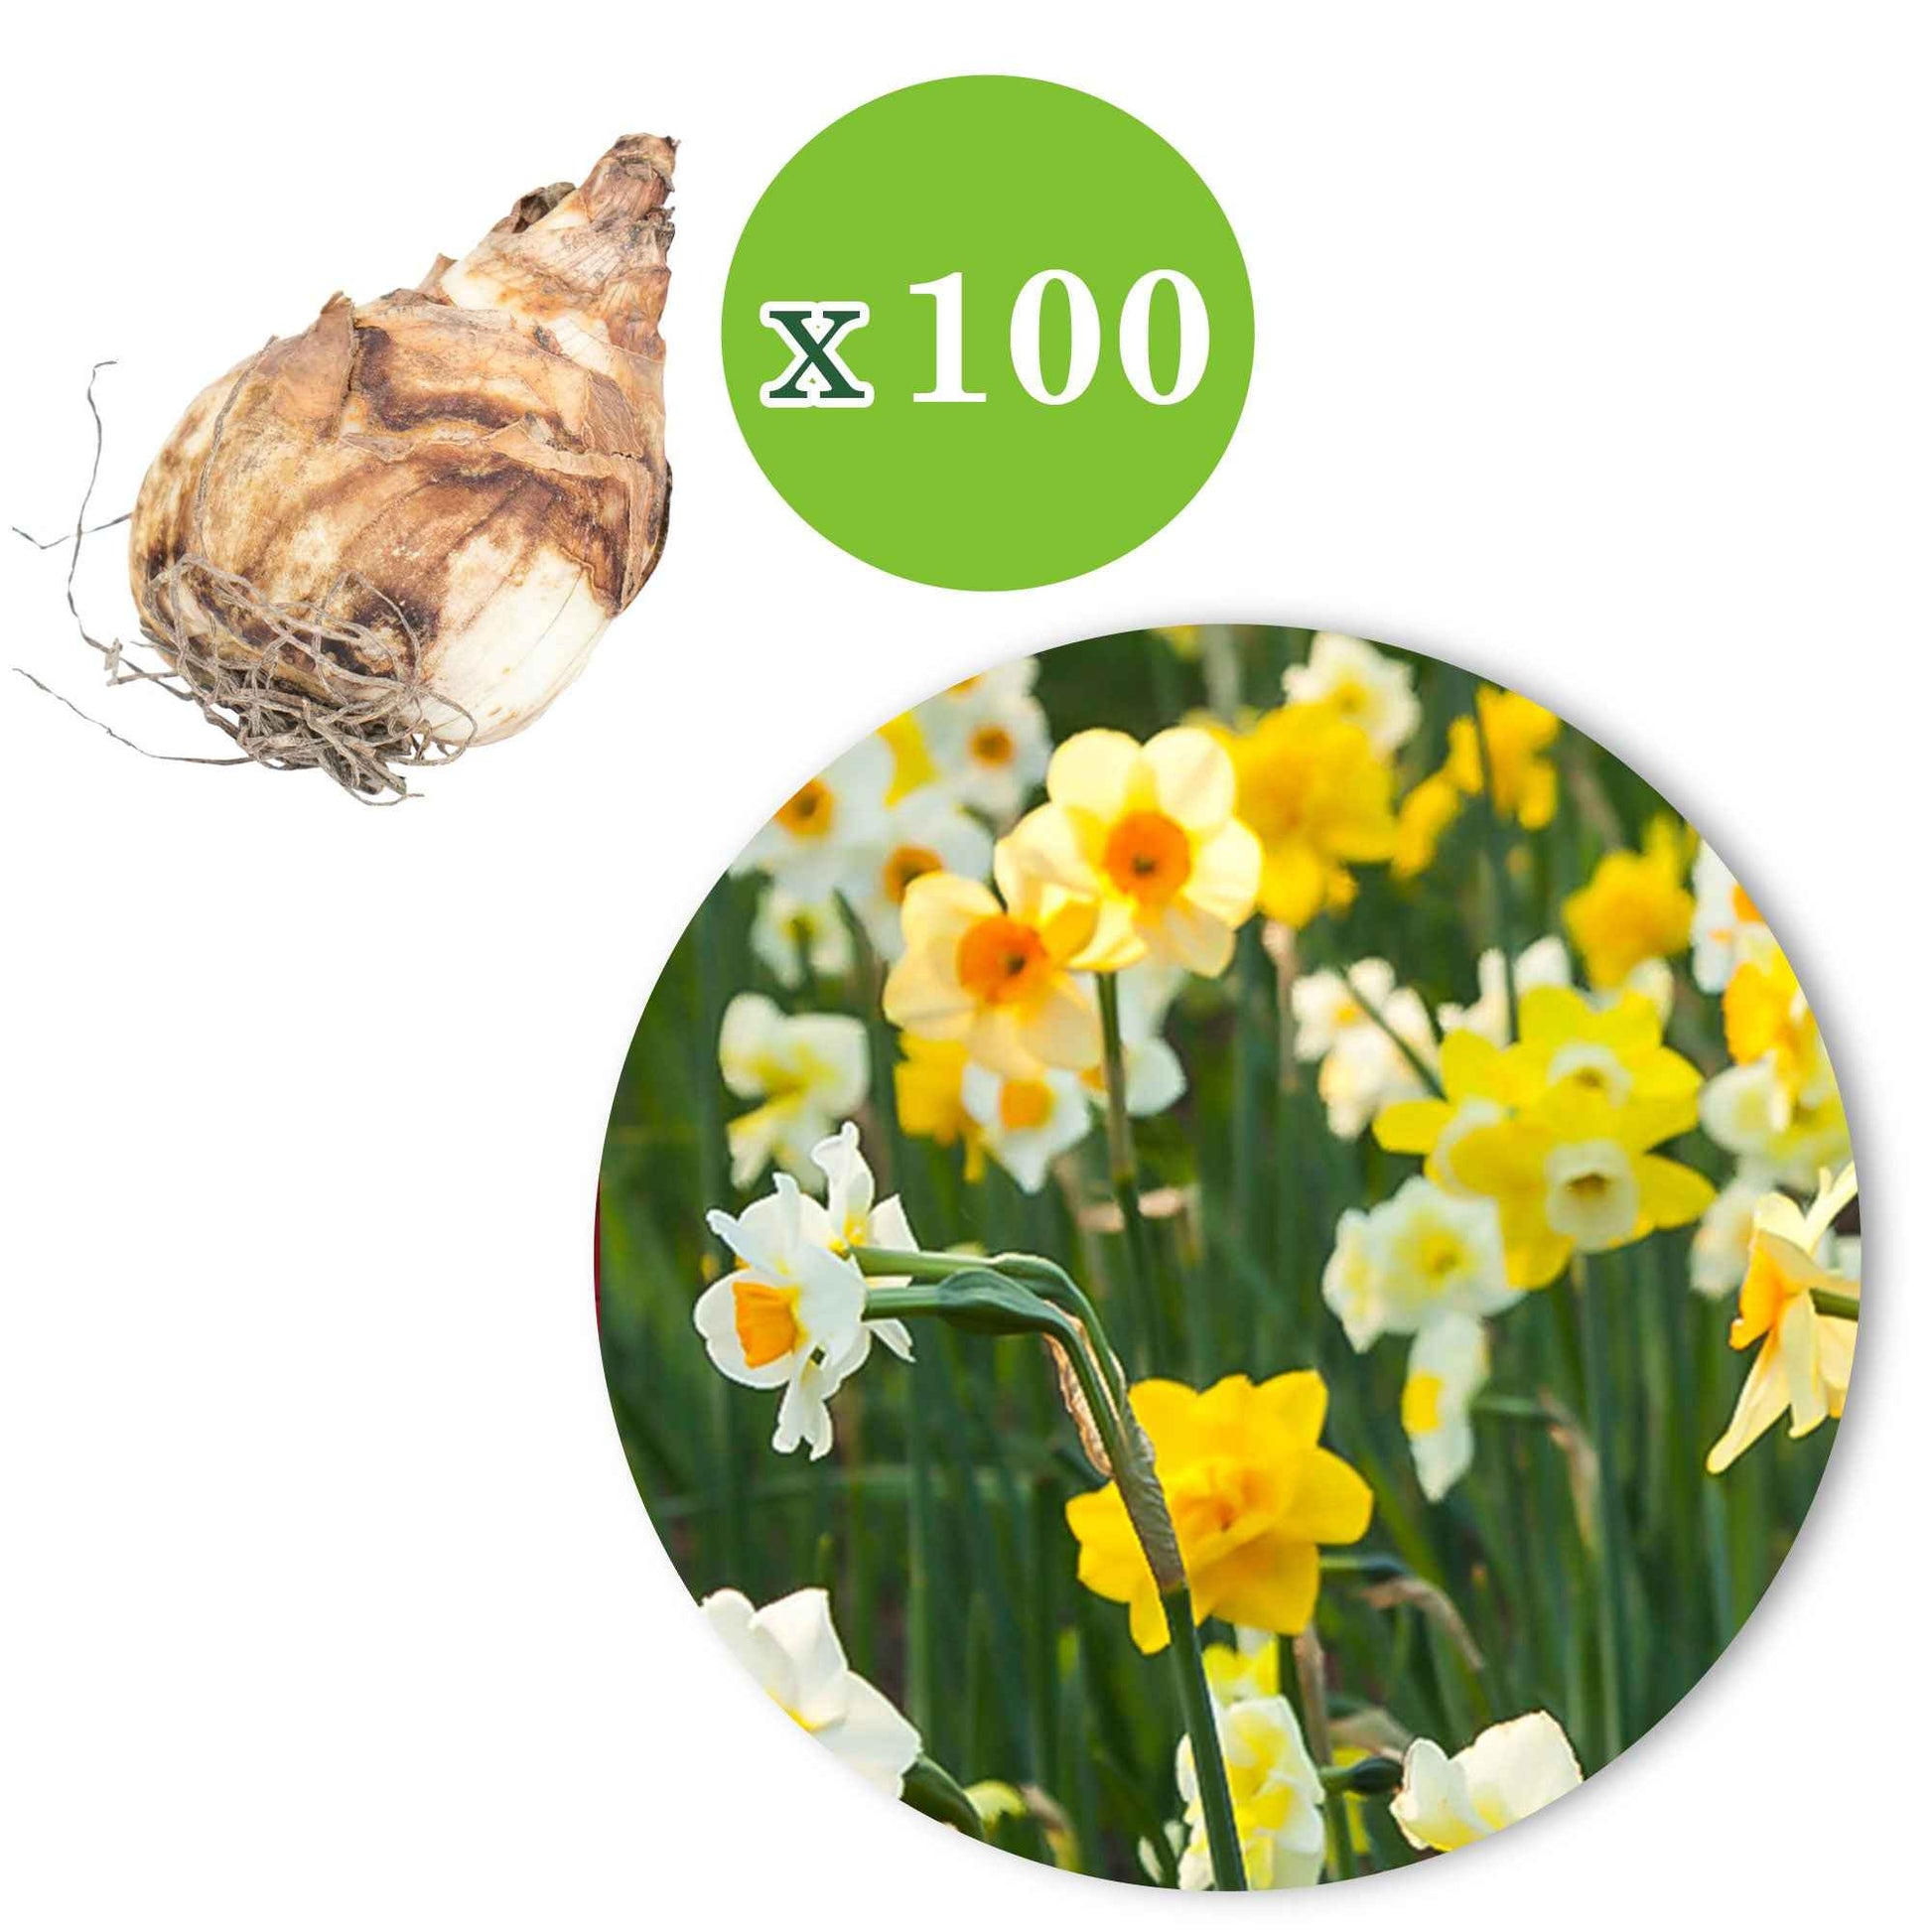 150x Narzisse und Tulpe - Mischung 'Frühlingsgarten' - Blumenzwiebel-Beetpakete